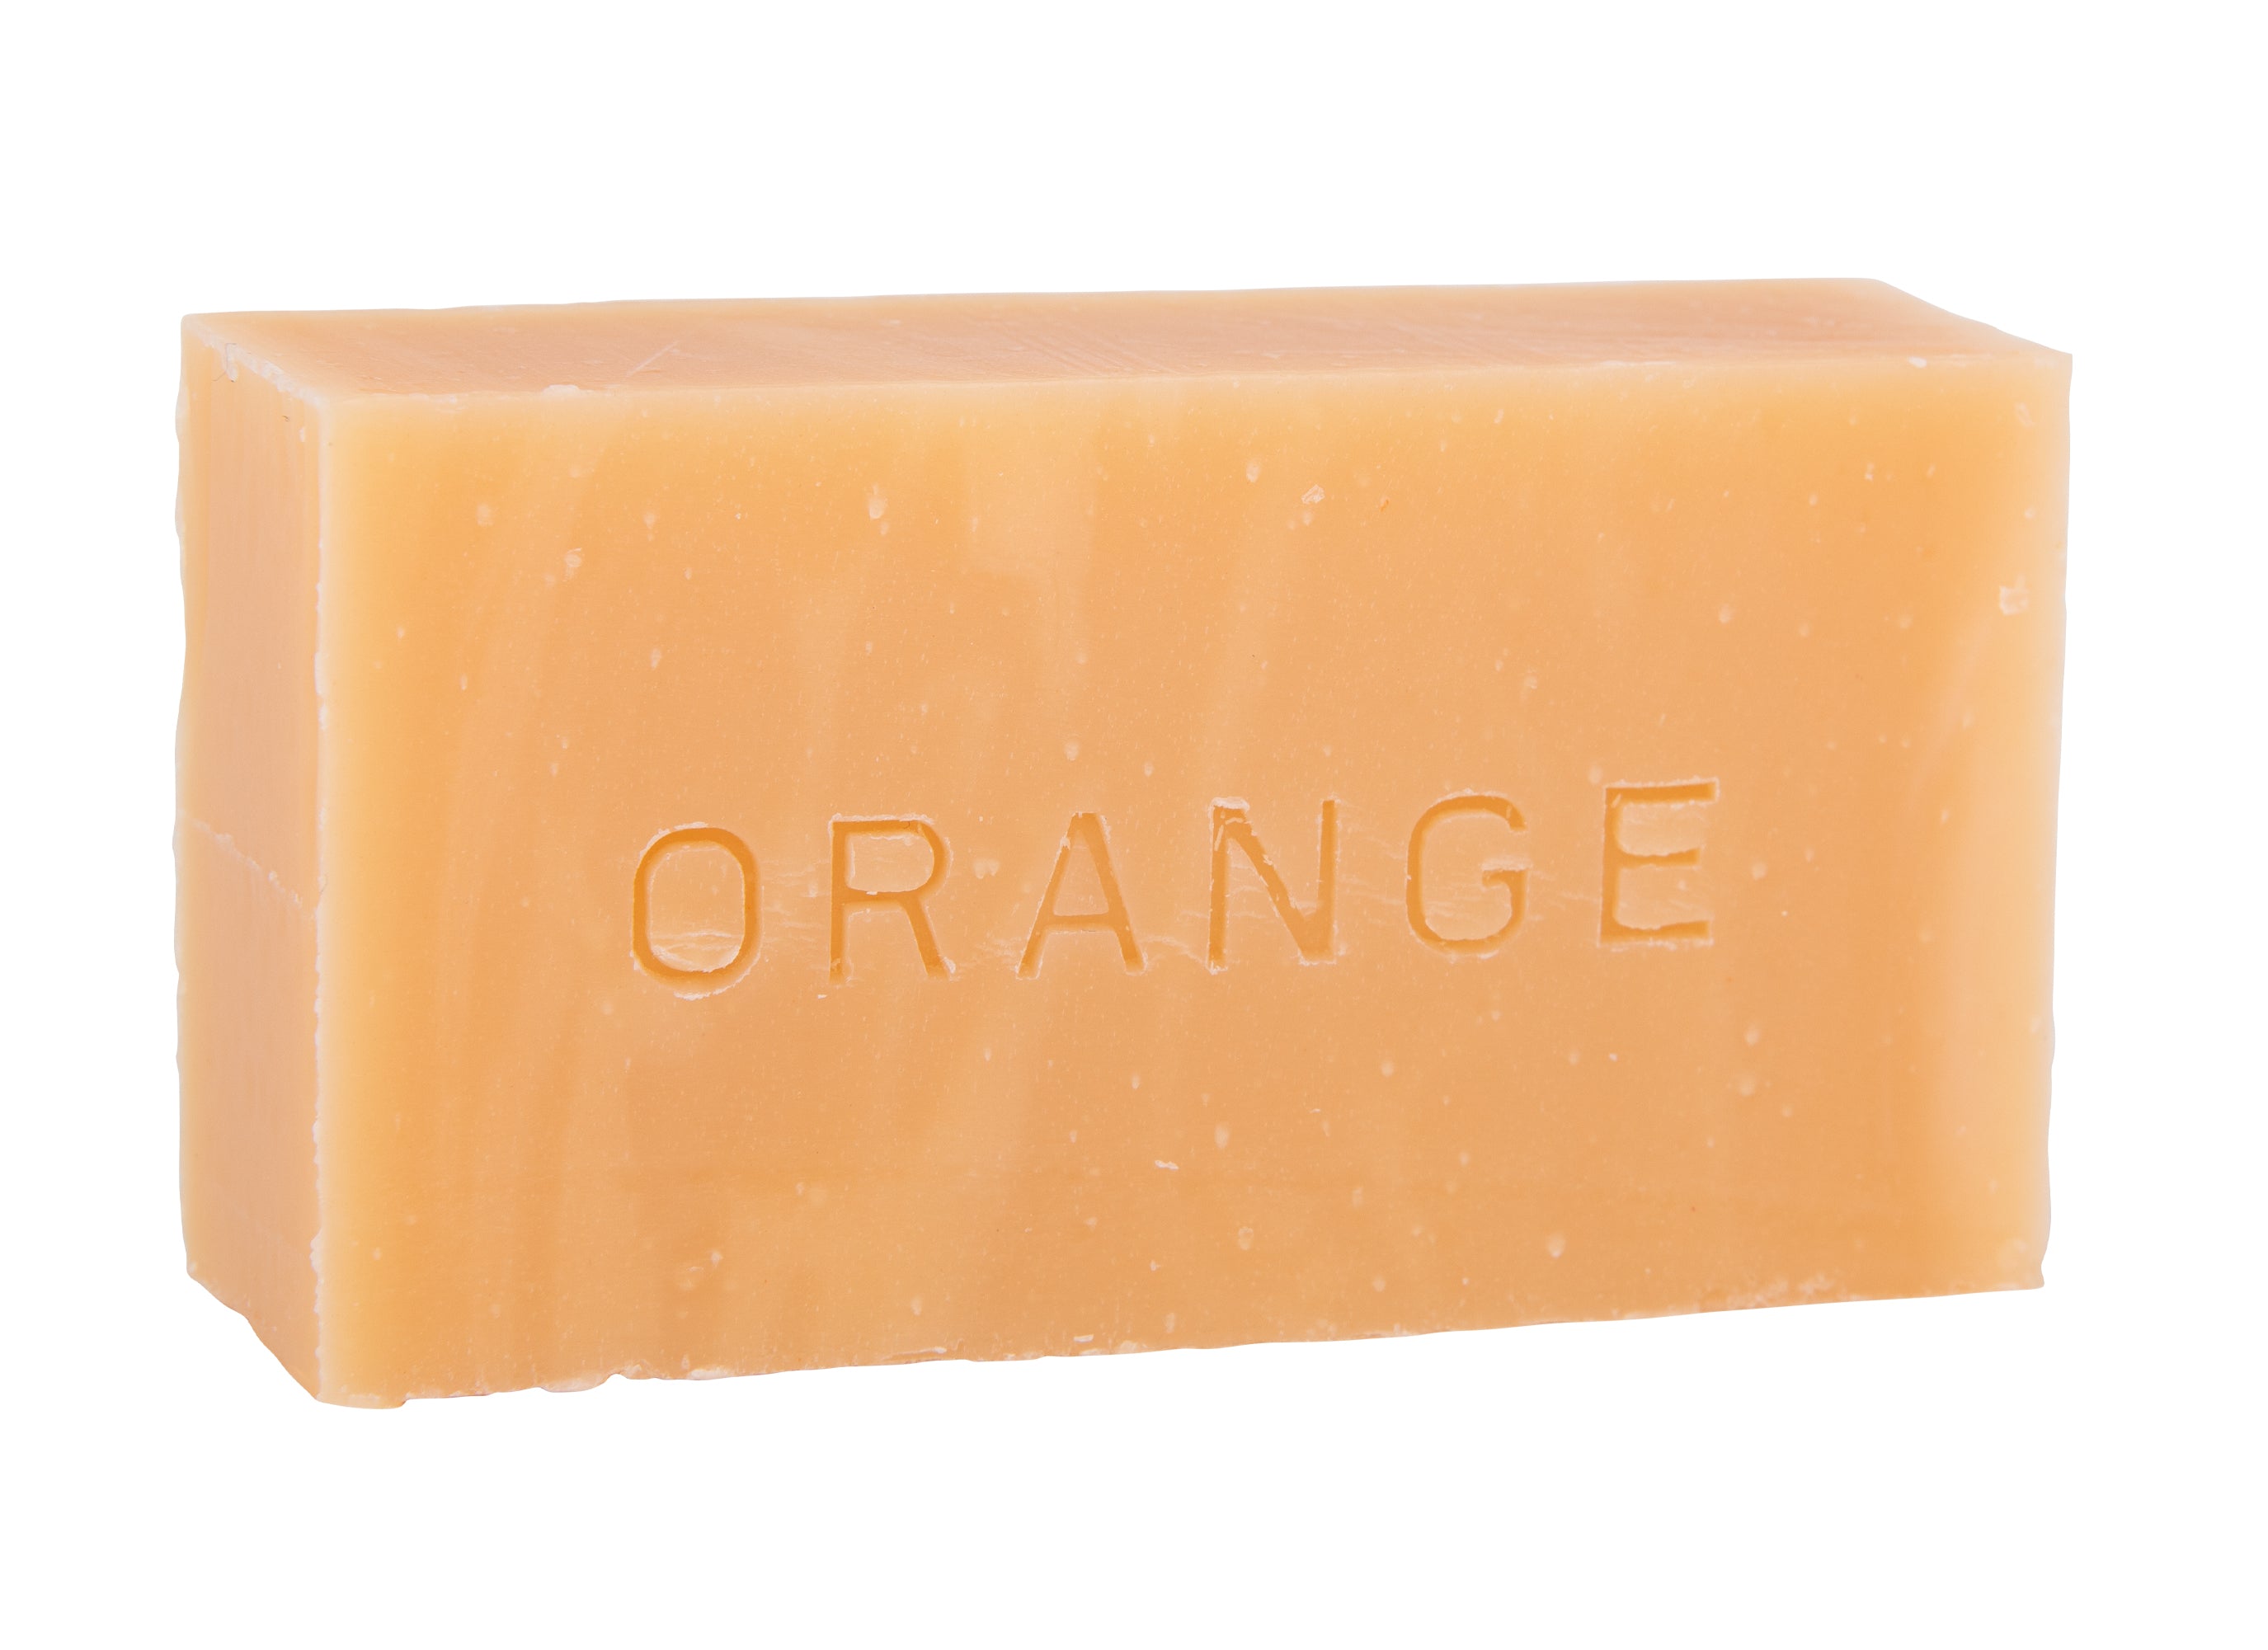 Savon corps visage 90 g.  Forme rectangulaire unicolor orange. Surgras à 8%.  Notre savon convient à tous les types de peau et constitue le choix idéal pour une utilisation quotidienne afin d'obtenir une peau lisse et éclatante.